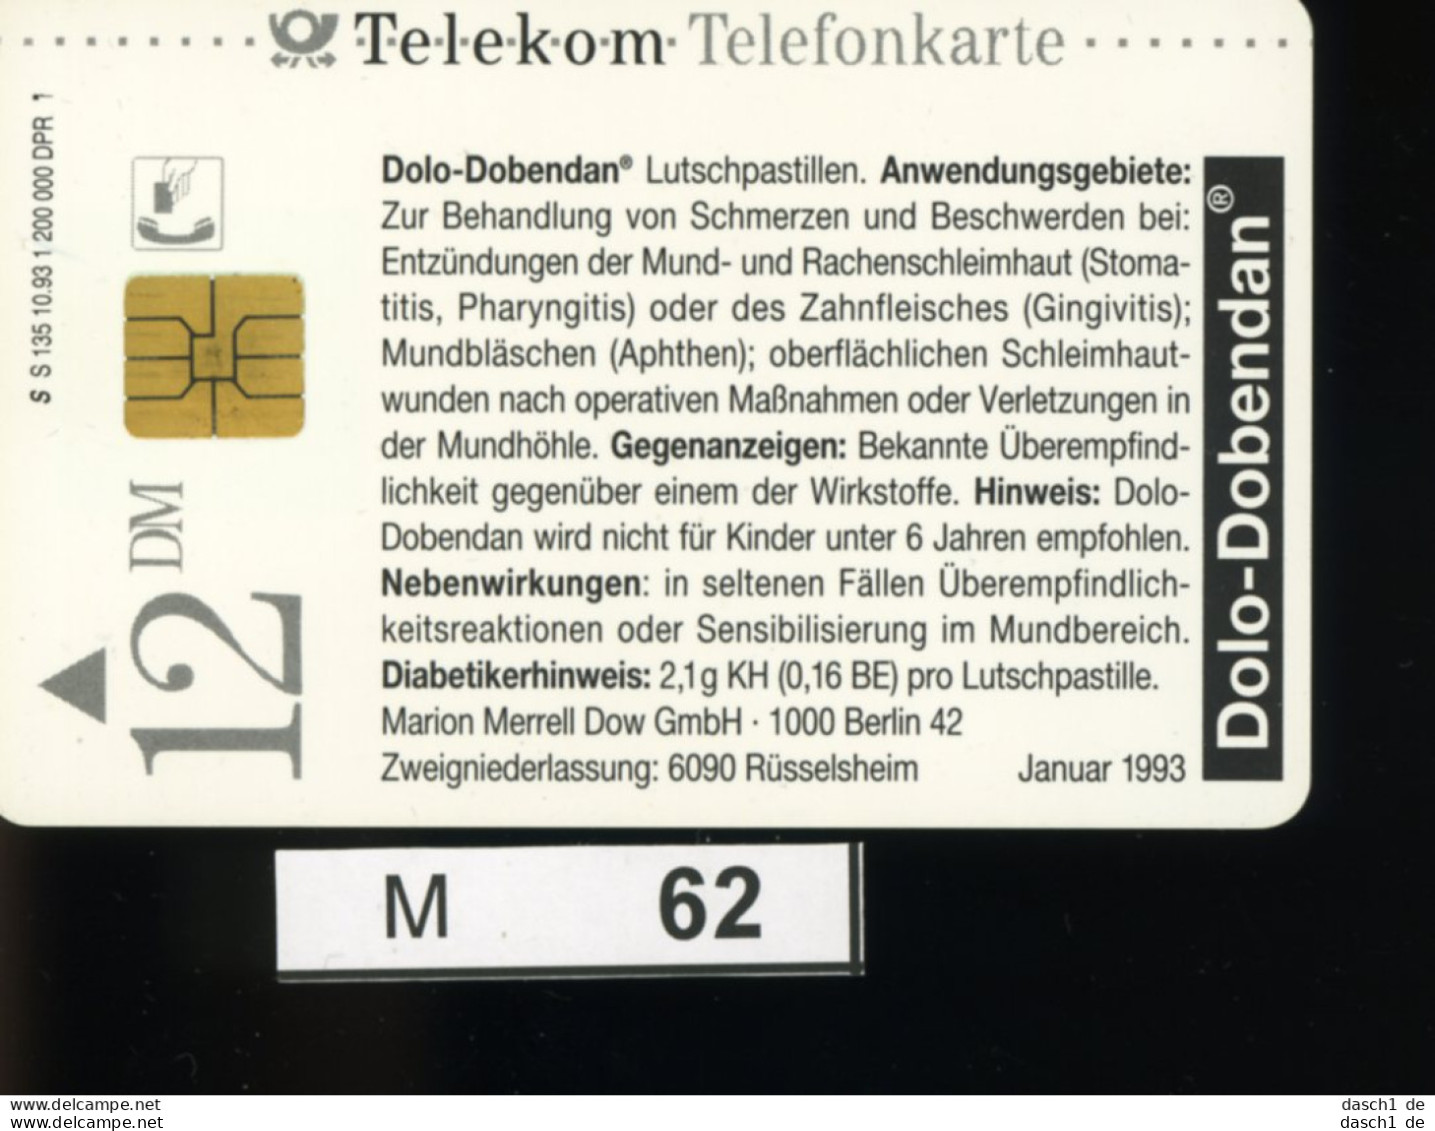 M062, Deutschland, TK, Sonderkarte Dolo-Dobendan, 12 DM, 1993 - K-Series: Kundenserie